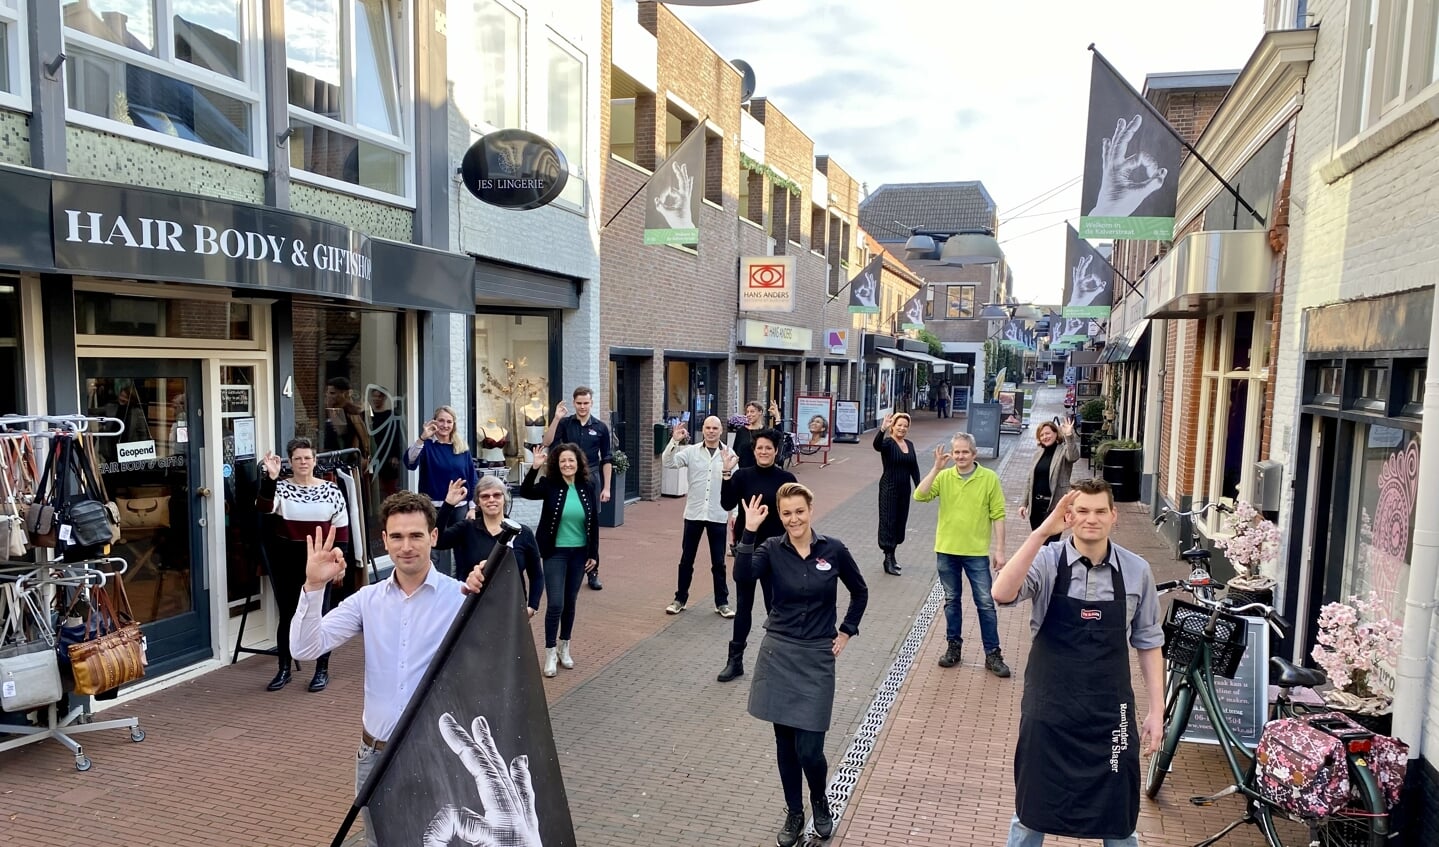 De ondernemers in de Kalverstraat hebben nieuwe vlaggen met een toepasselijk logo.